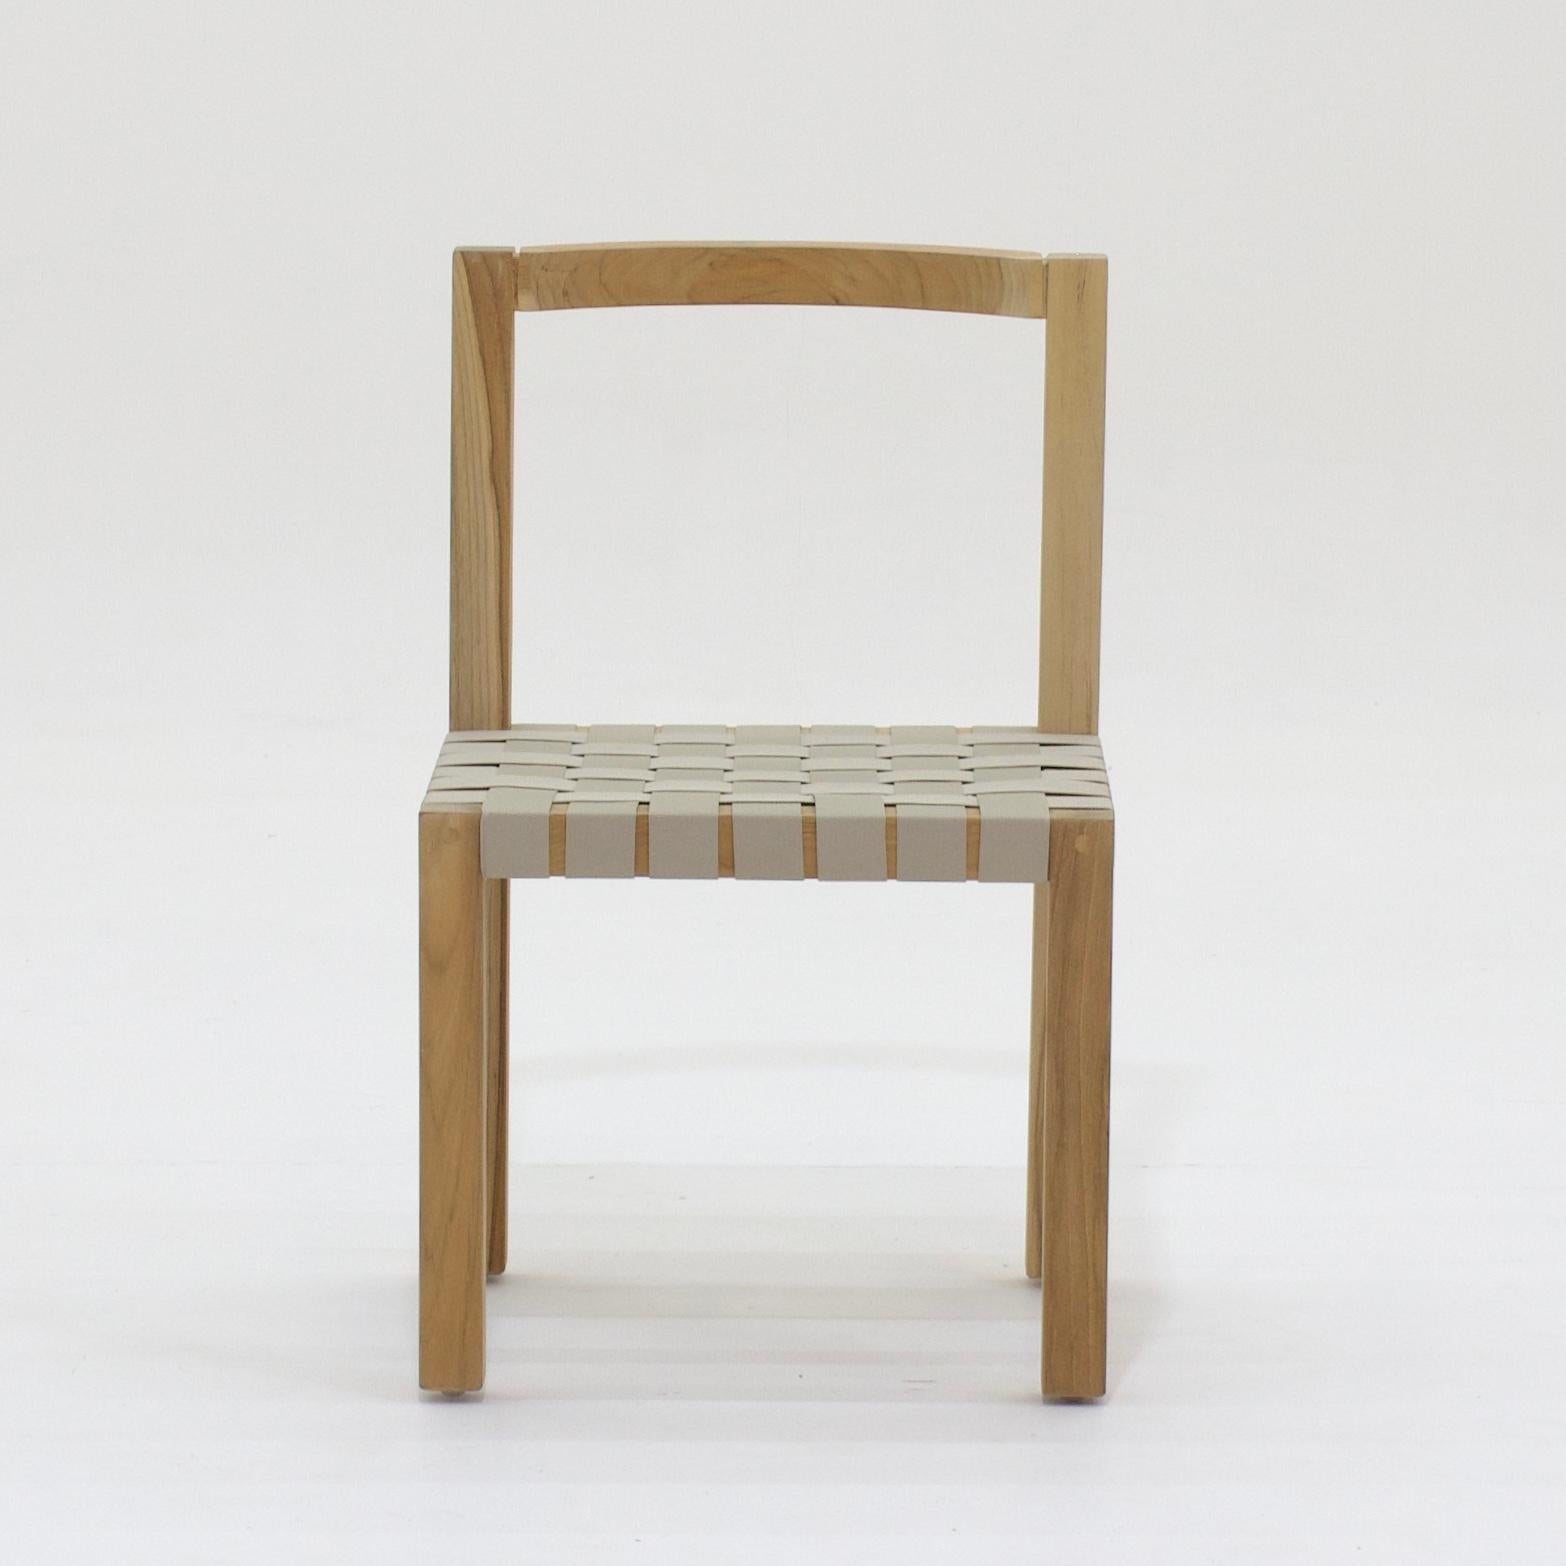 Cette chaise d'extérieur minimaliste a un raisonnement géométrique et élémentaire. Avec l'ADN carré, tous les profils structurels en bois massif sont essentiels pour son fonctionnement et dimensionnés pour assurer la stabilité et la résistance aux